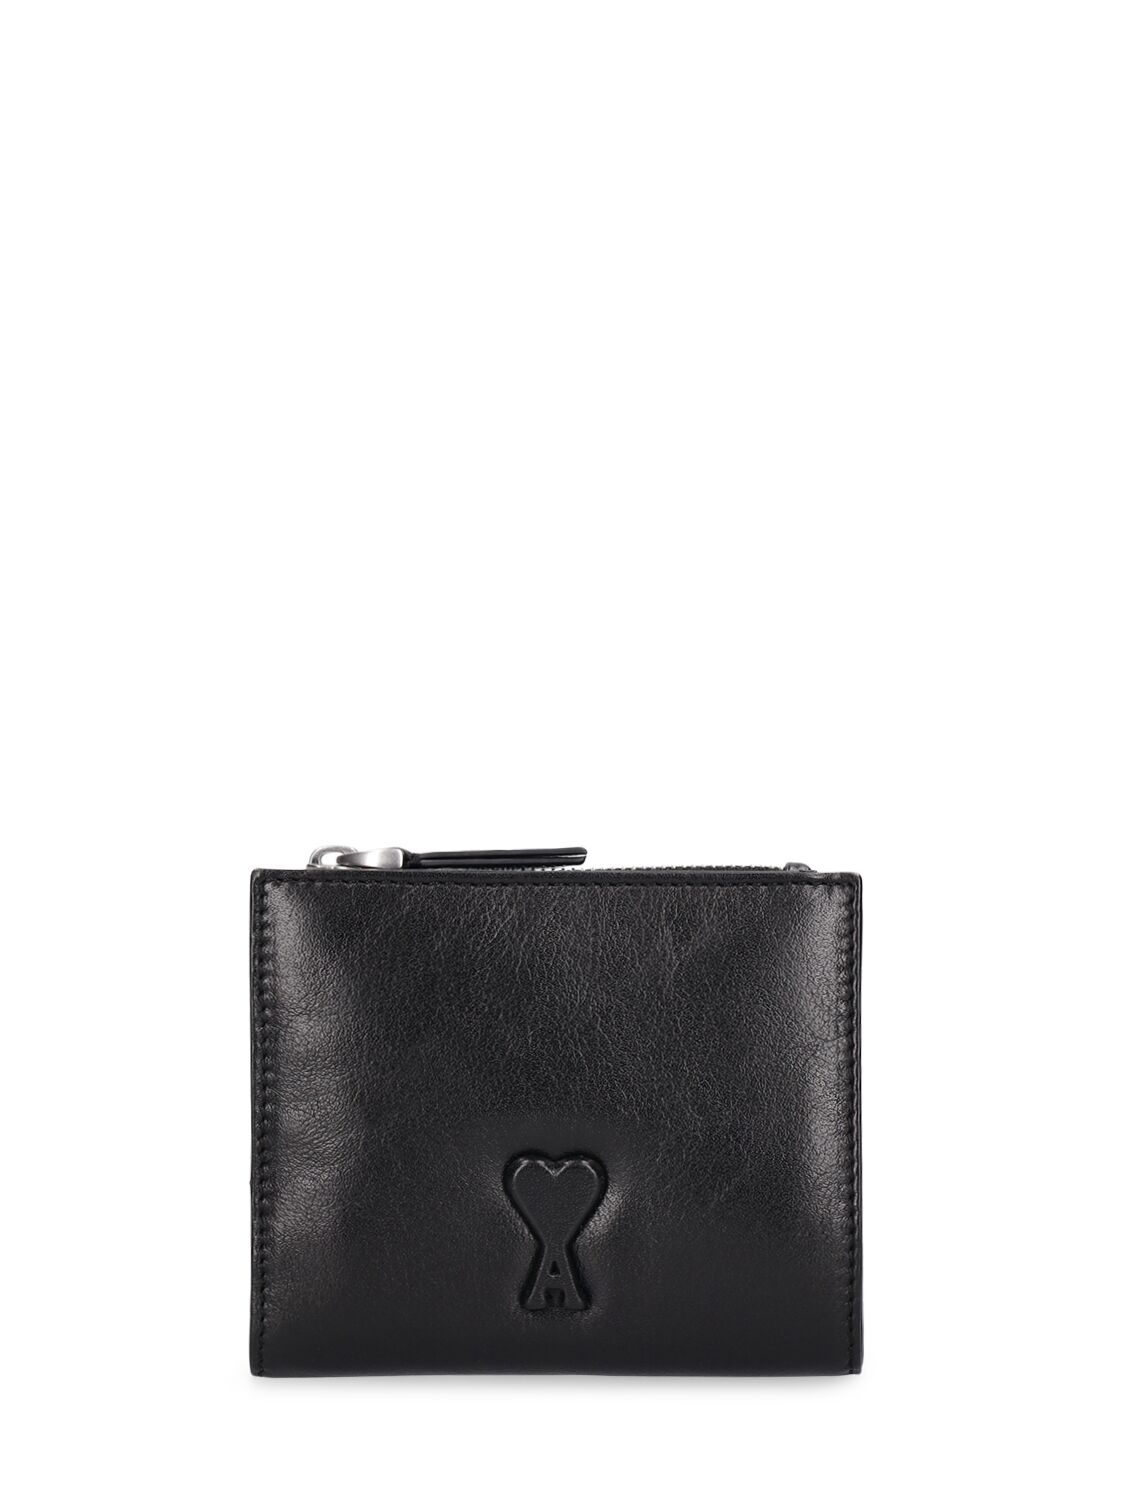 Ami Alexandre Mattiussi Voulez Vous Folded Wallet In Black